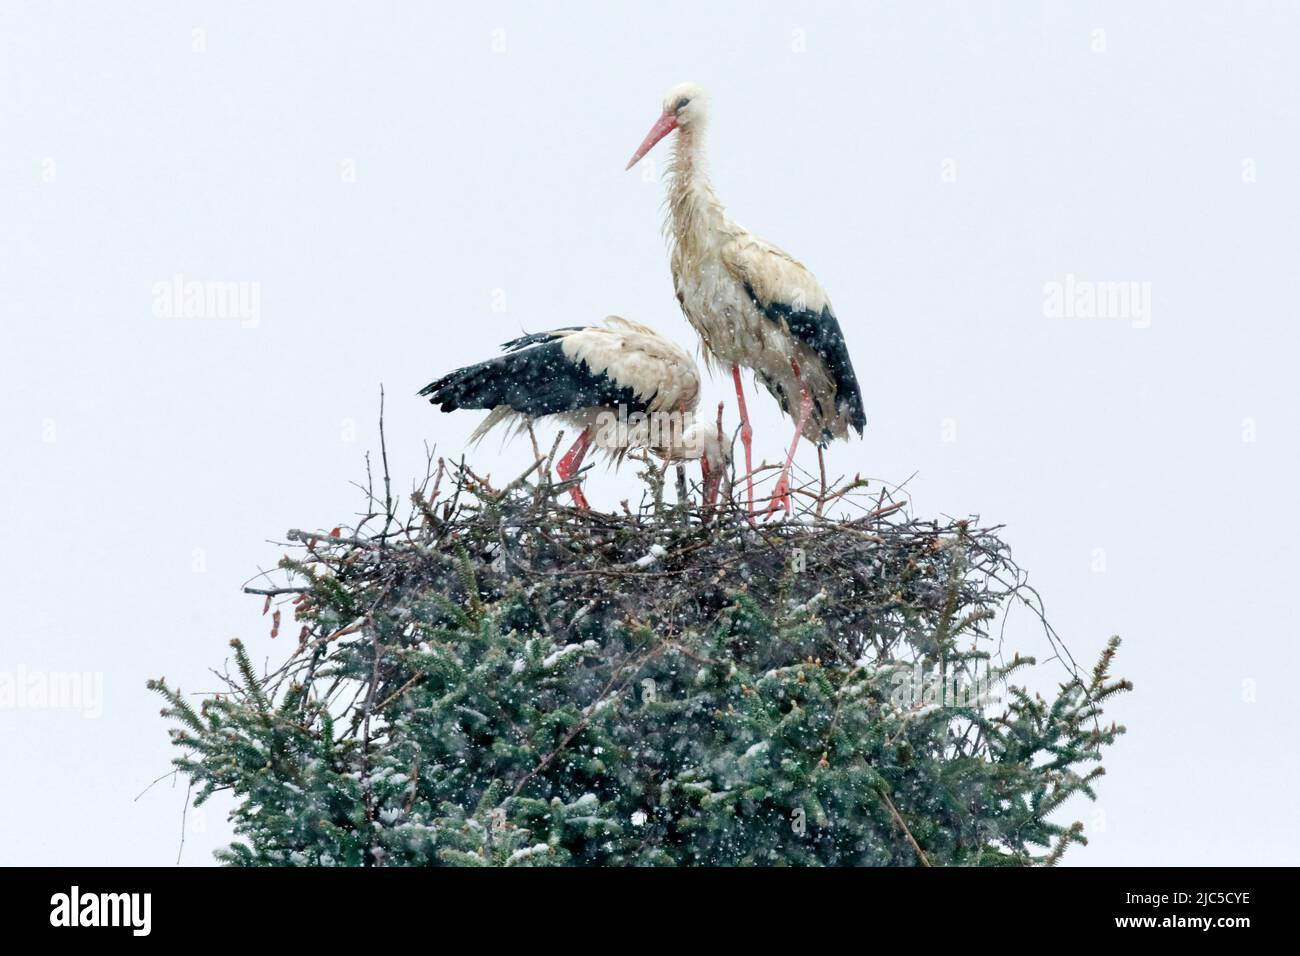 Weißstorchen Paar steht inmitten eines Schneesturms in ihrem Nest und blickt besorgt auf ihre Brut, Frühling, Oetwil am See, Kanton Zürich, Schweiz ** Foto Stock